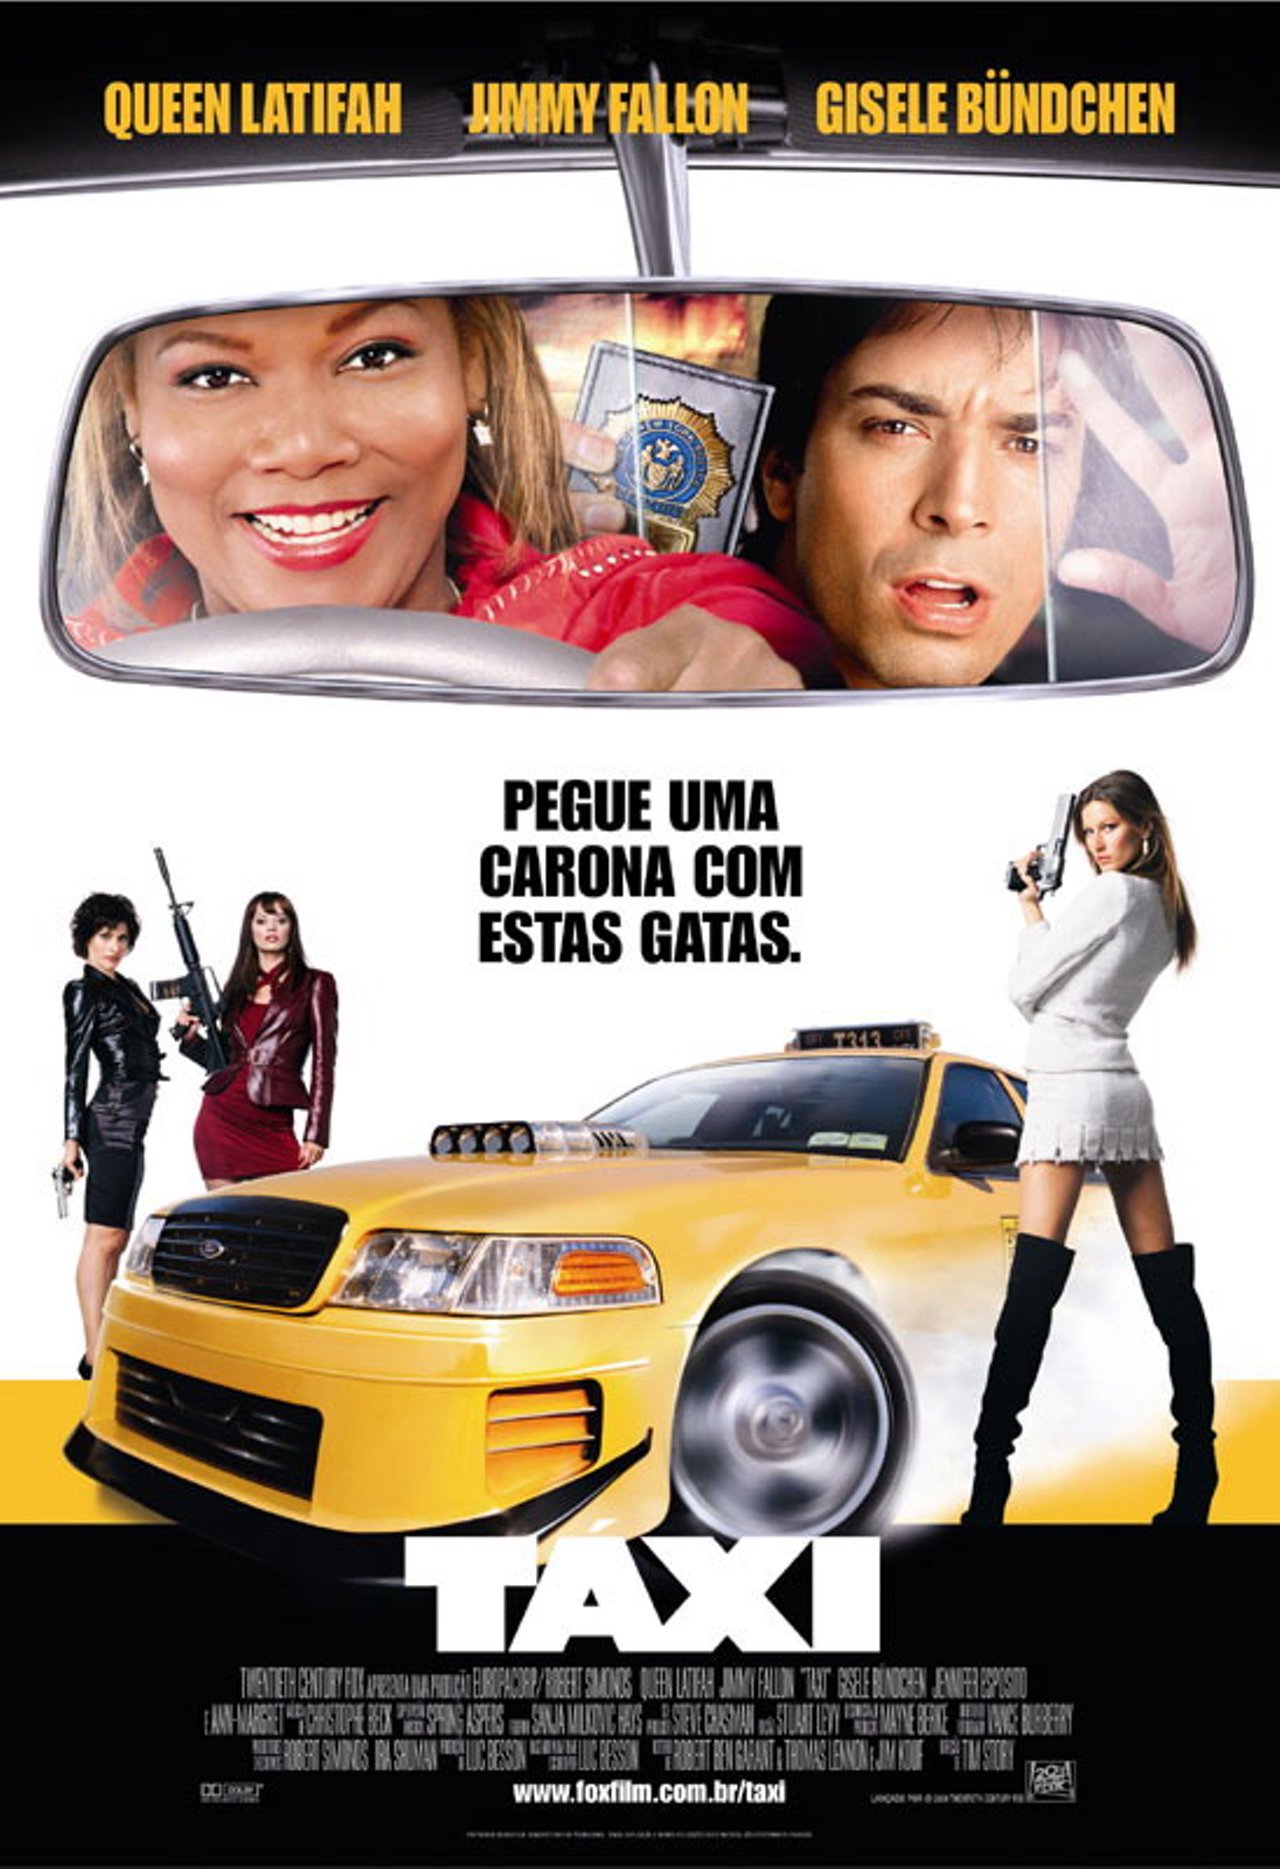 Taxi (2004) แท็กซี่ เหยียบกระฉูดเมือง ปล้นสนั่นล้อ Queen Latifah